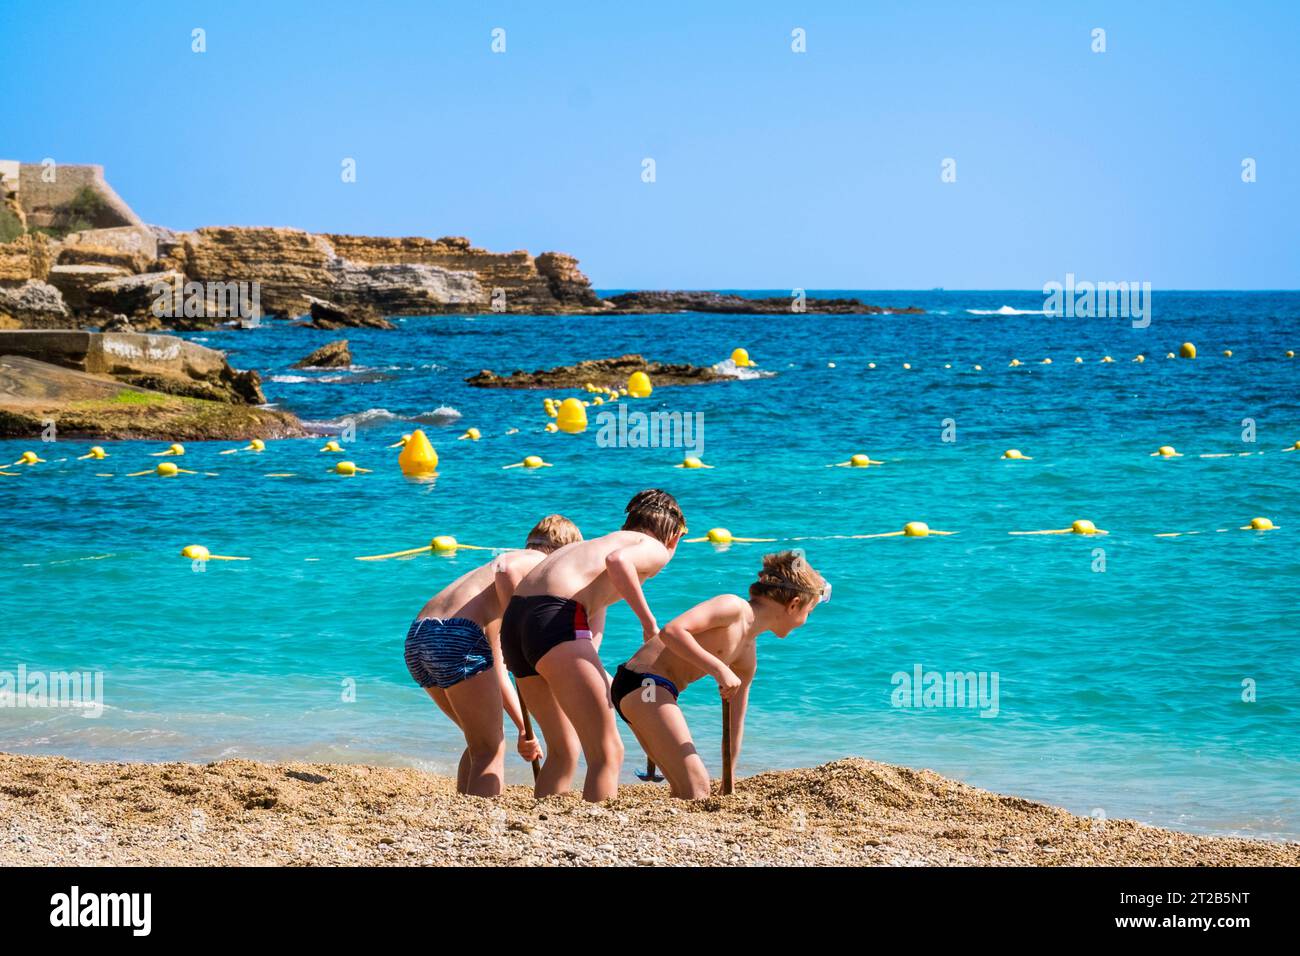 Trois jeunes garçons creusant dans le sable sur la plage de Cassis, dans le sud de la France. Banque D'Images